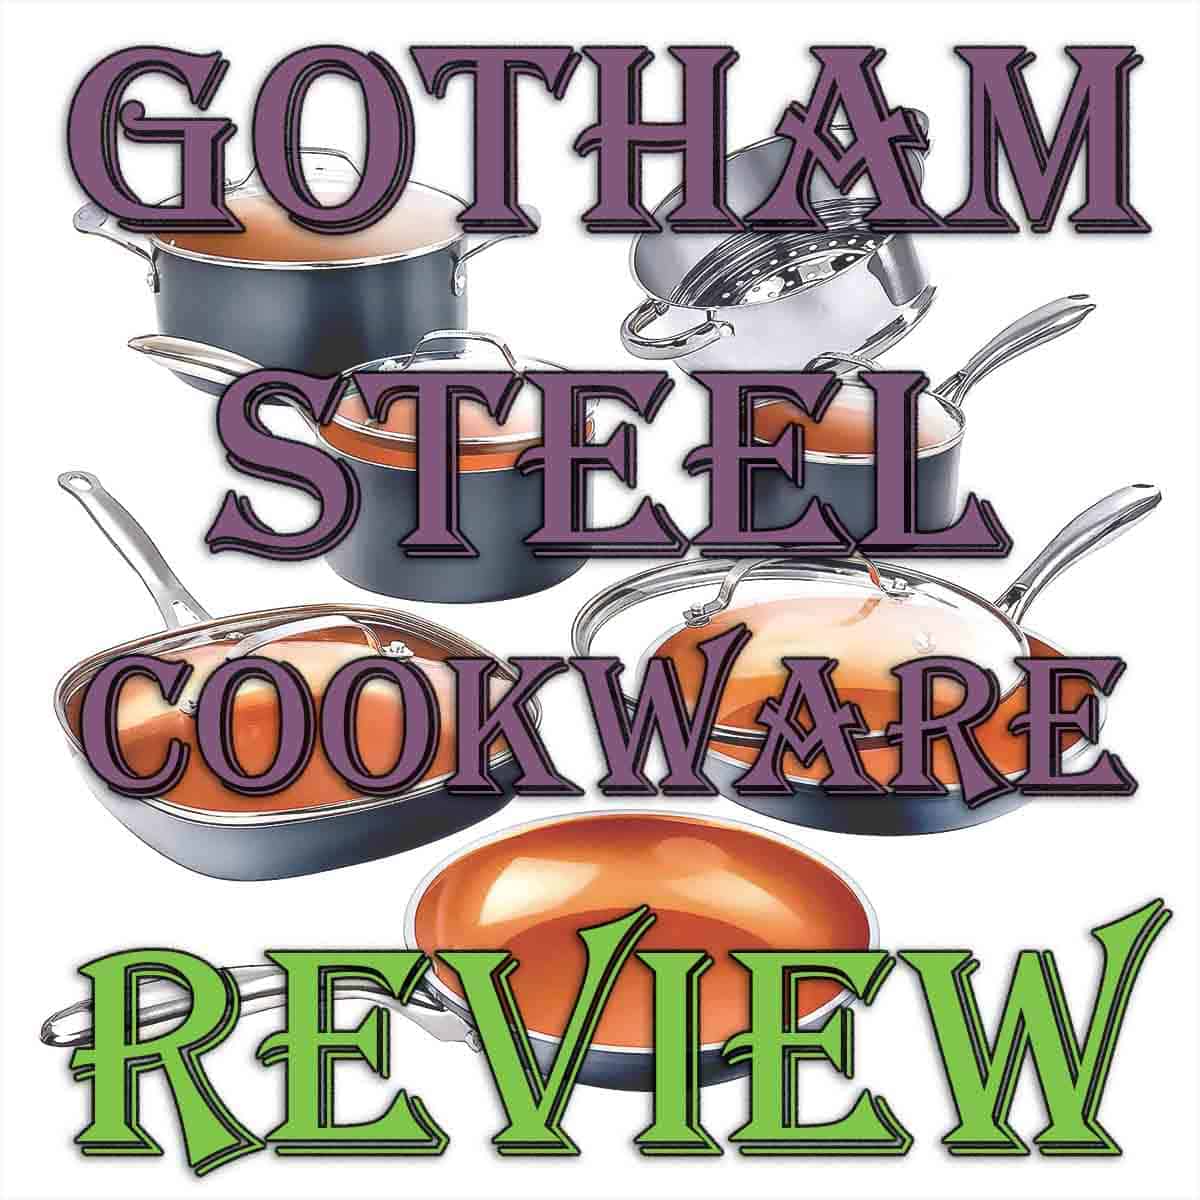 https://leelalicious.com/wp-content/uploads/2023/06/Gotham-Steel-cookware-review.jpg